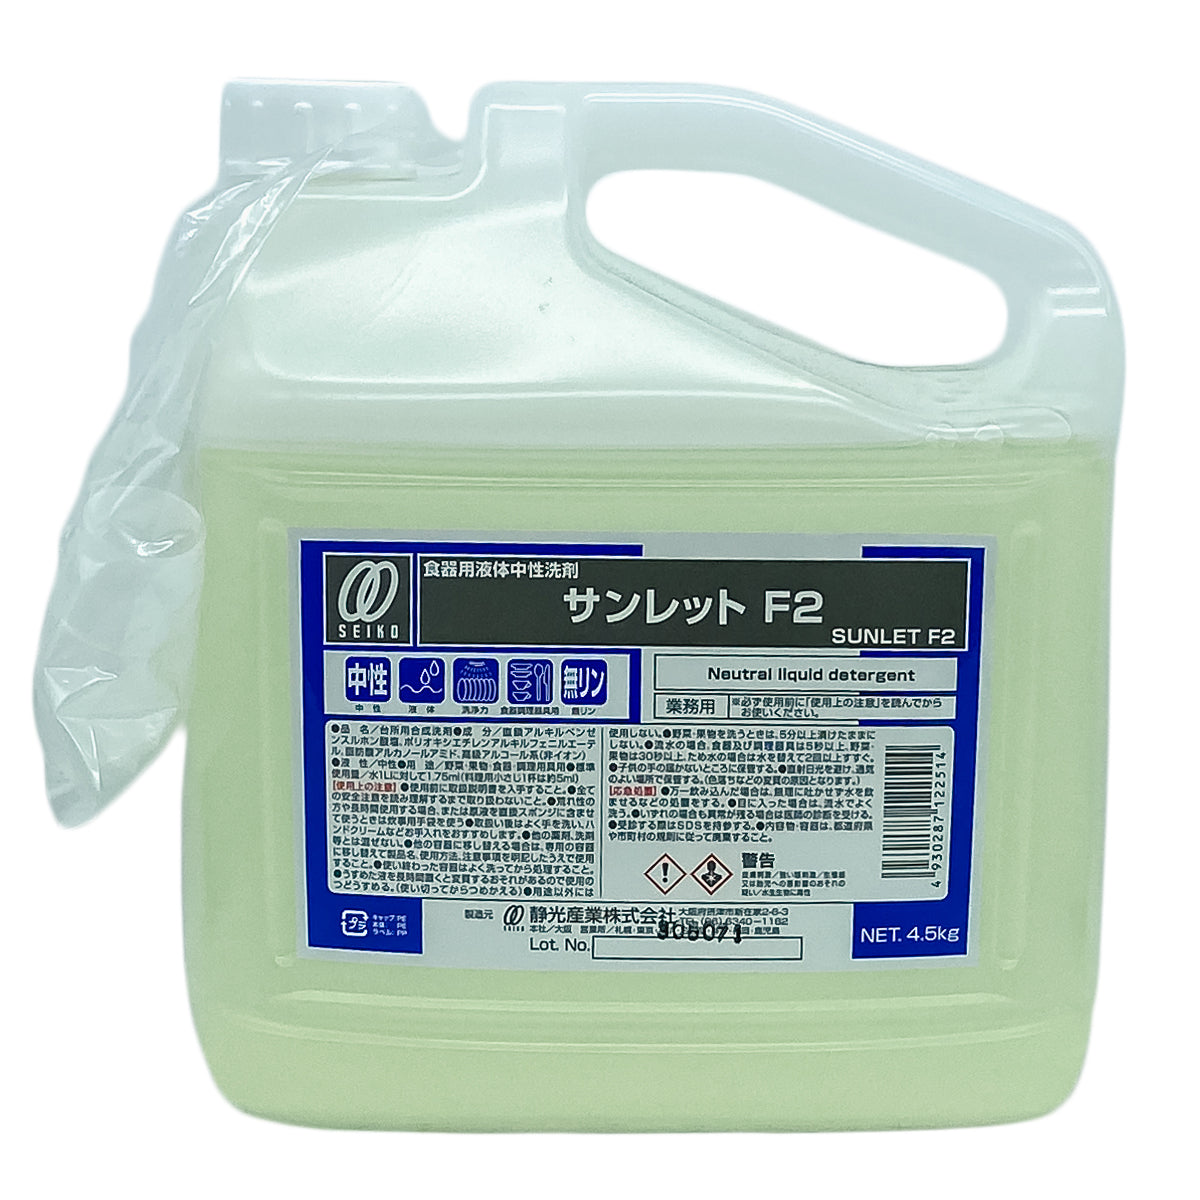 【高級中性洗剤】静光産業 サンレット F2 4.5kg